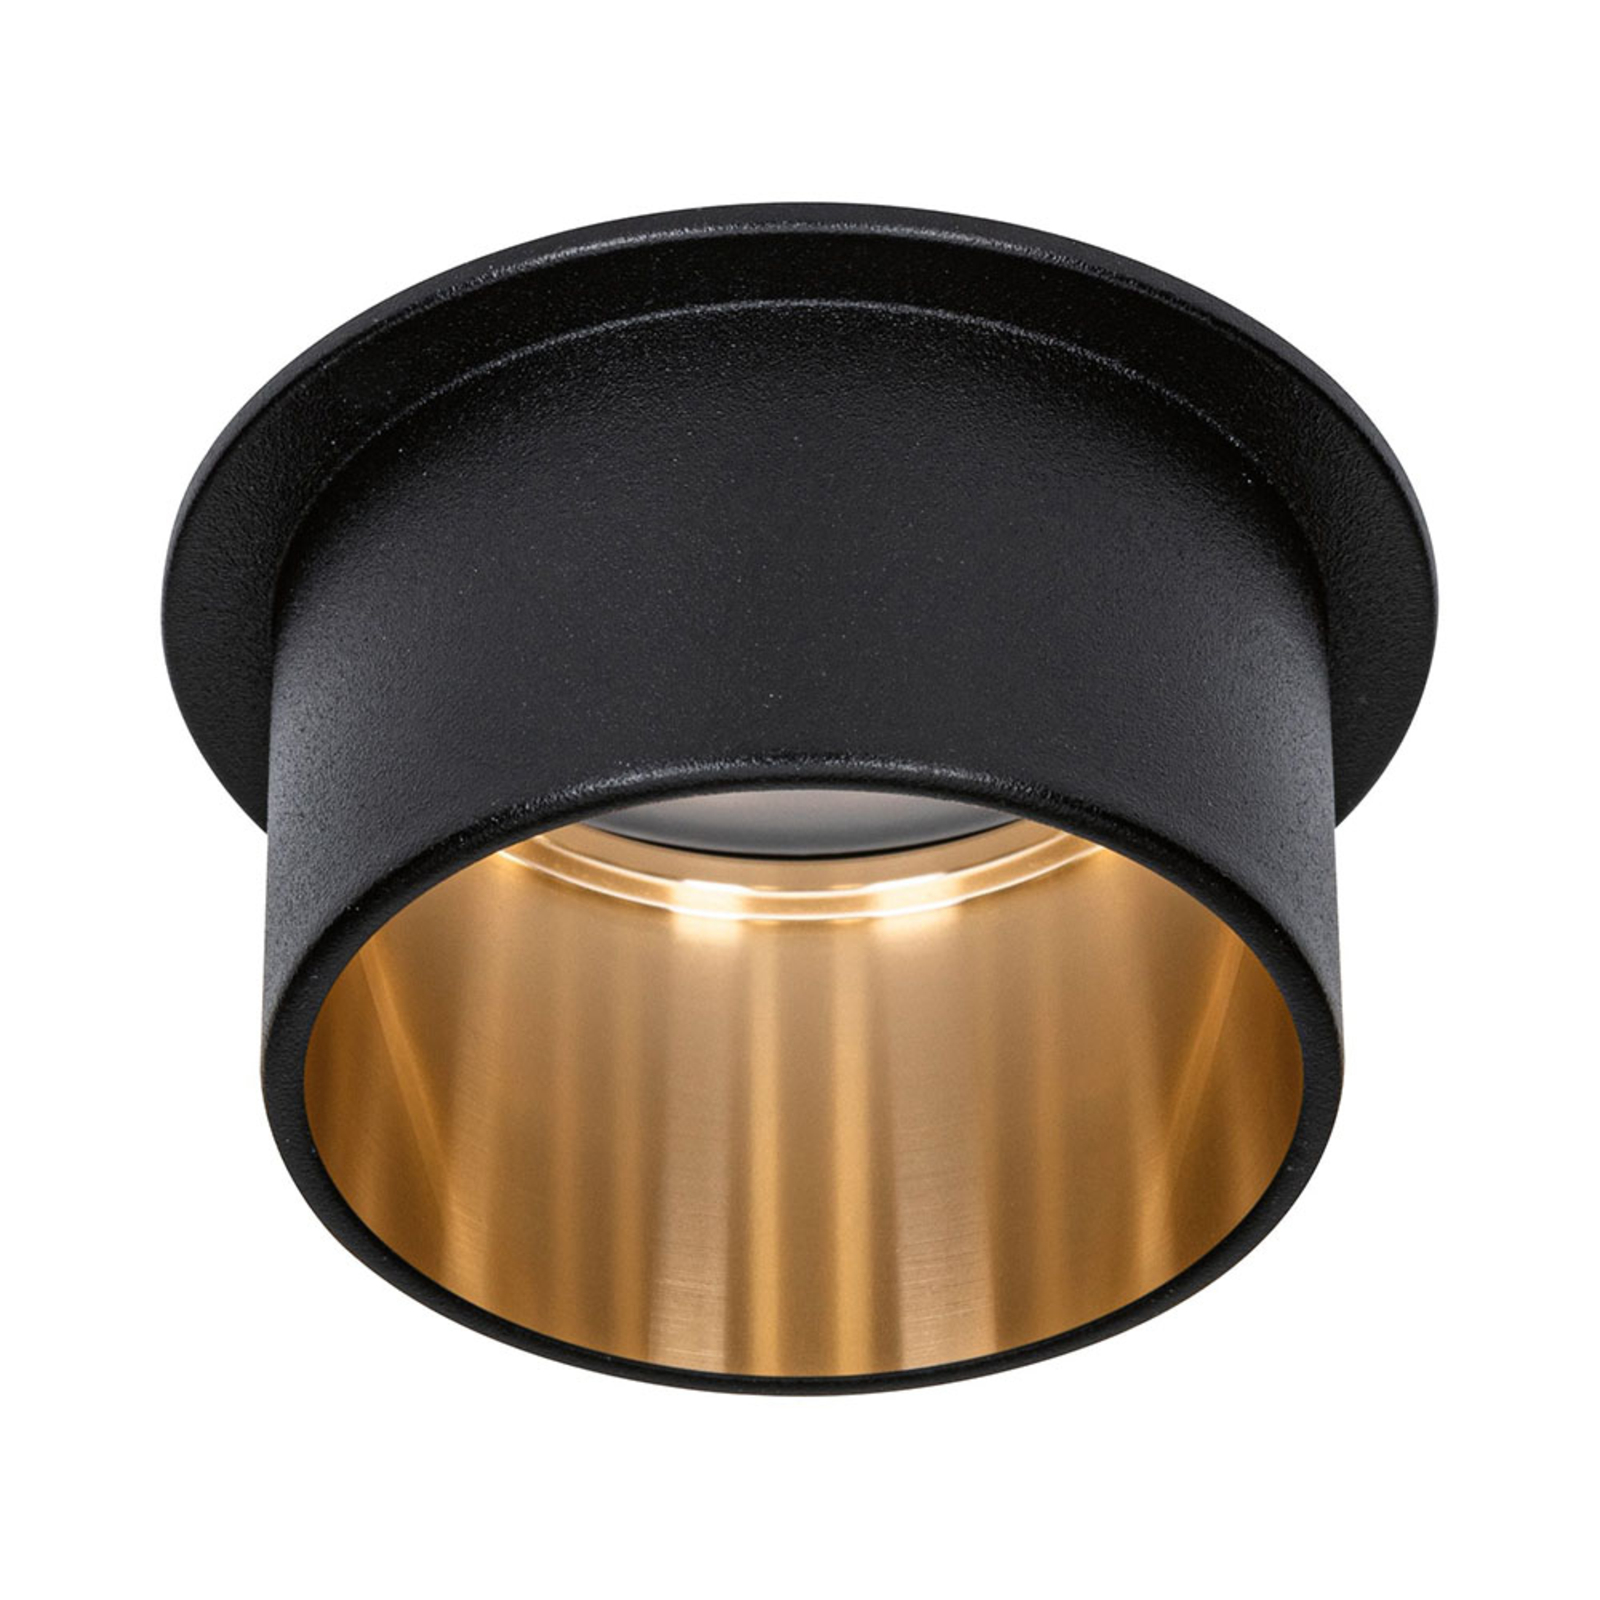 Paulmann Gil LED inbouwlamp mat zwart/goud